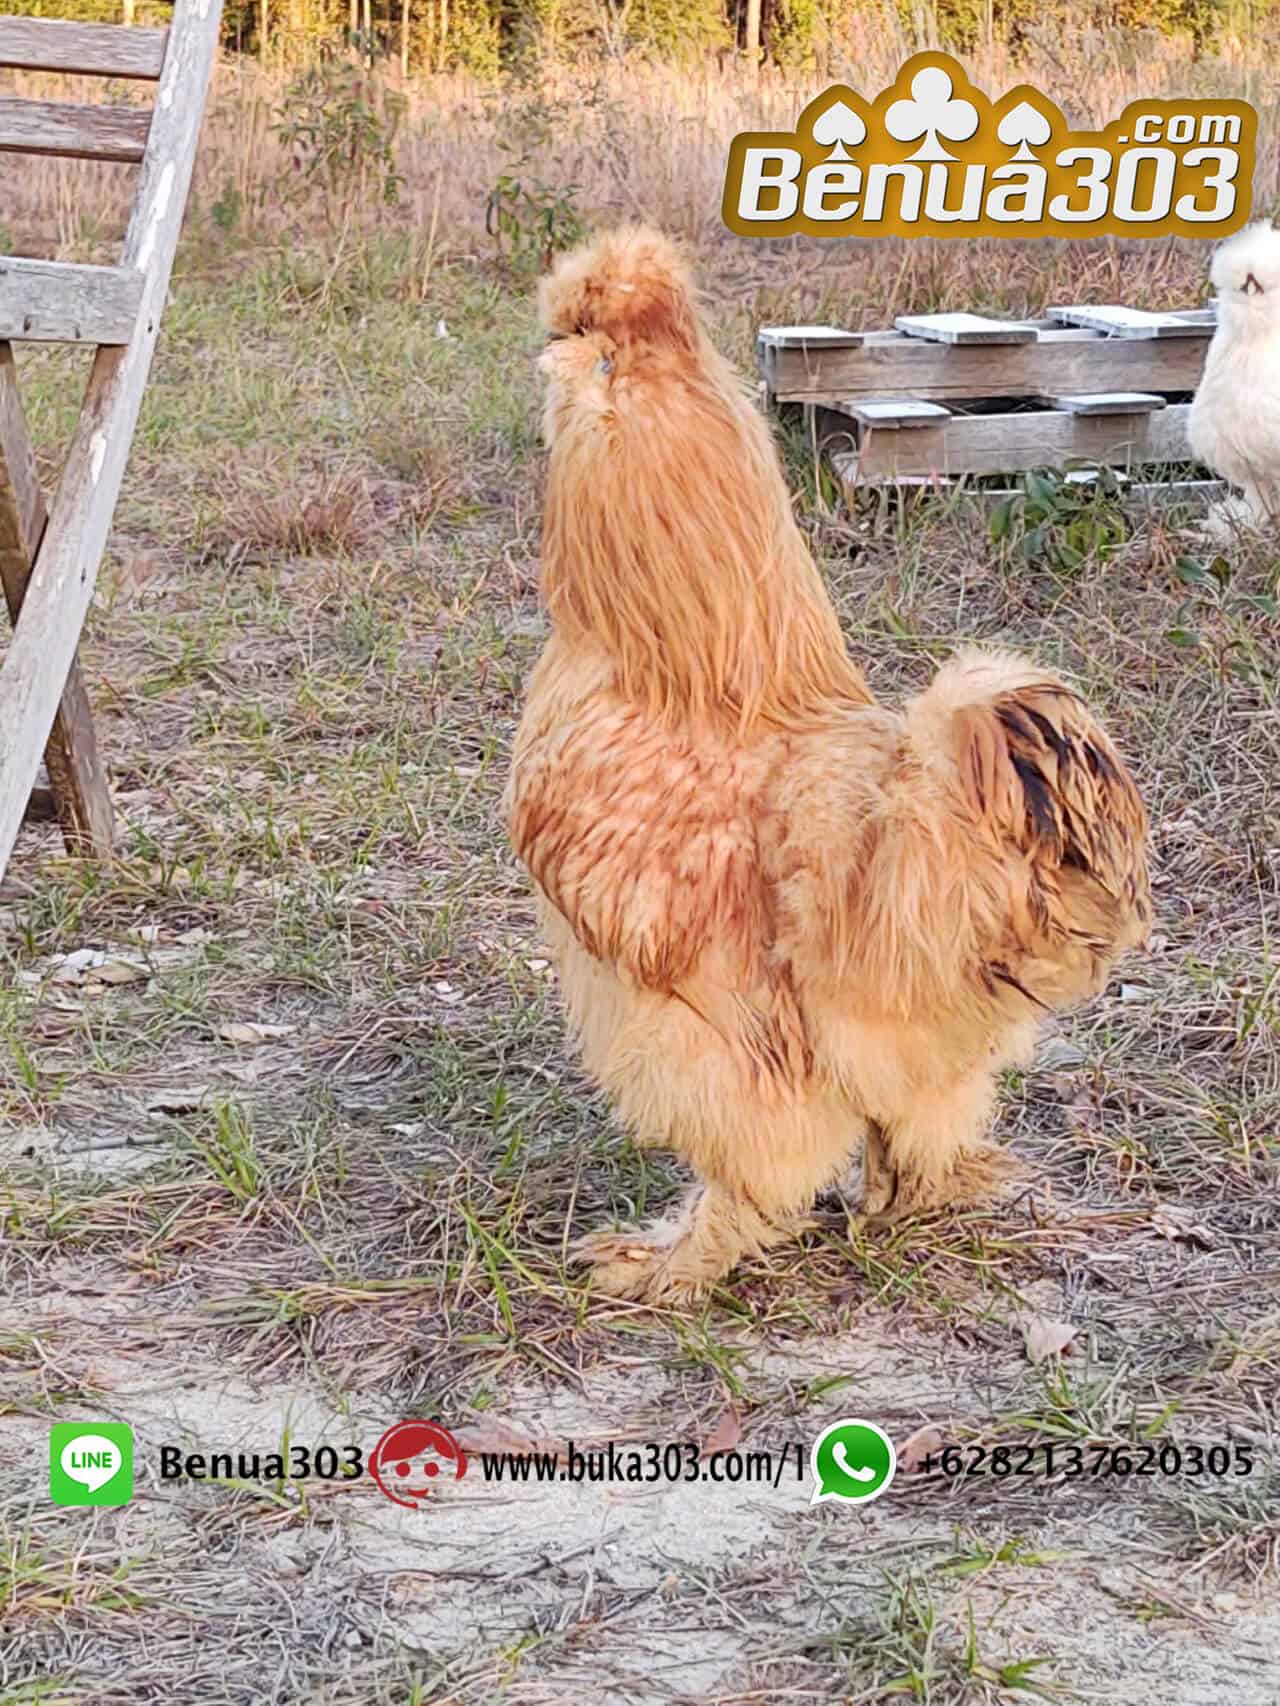 Download Aplikasi Sabung Ayam S128